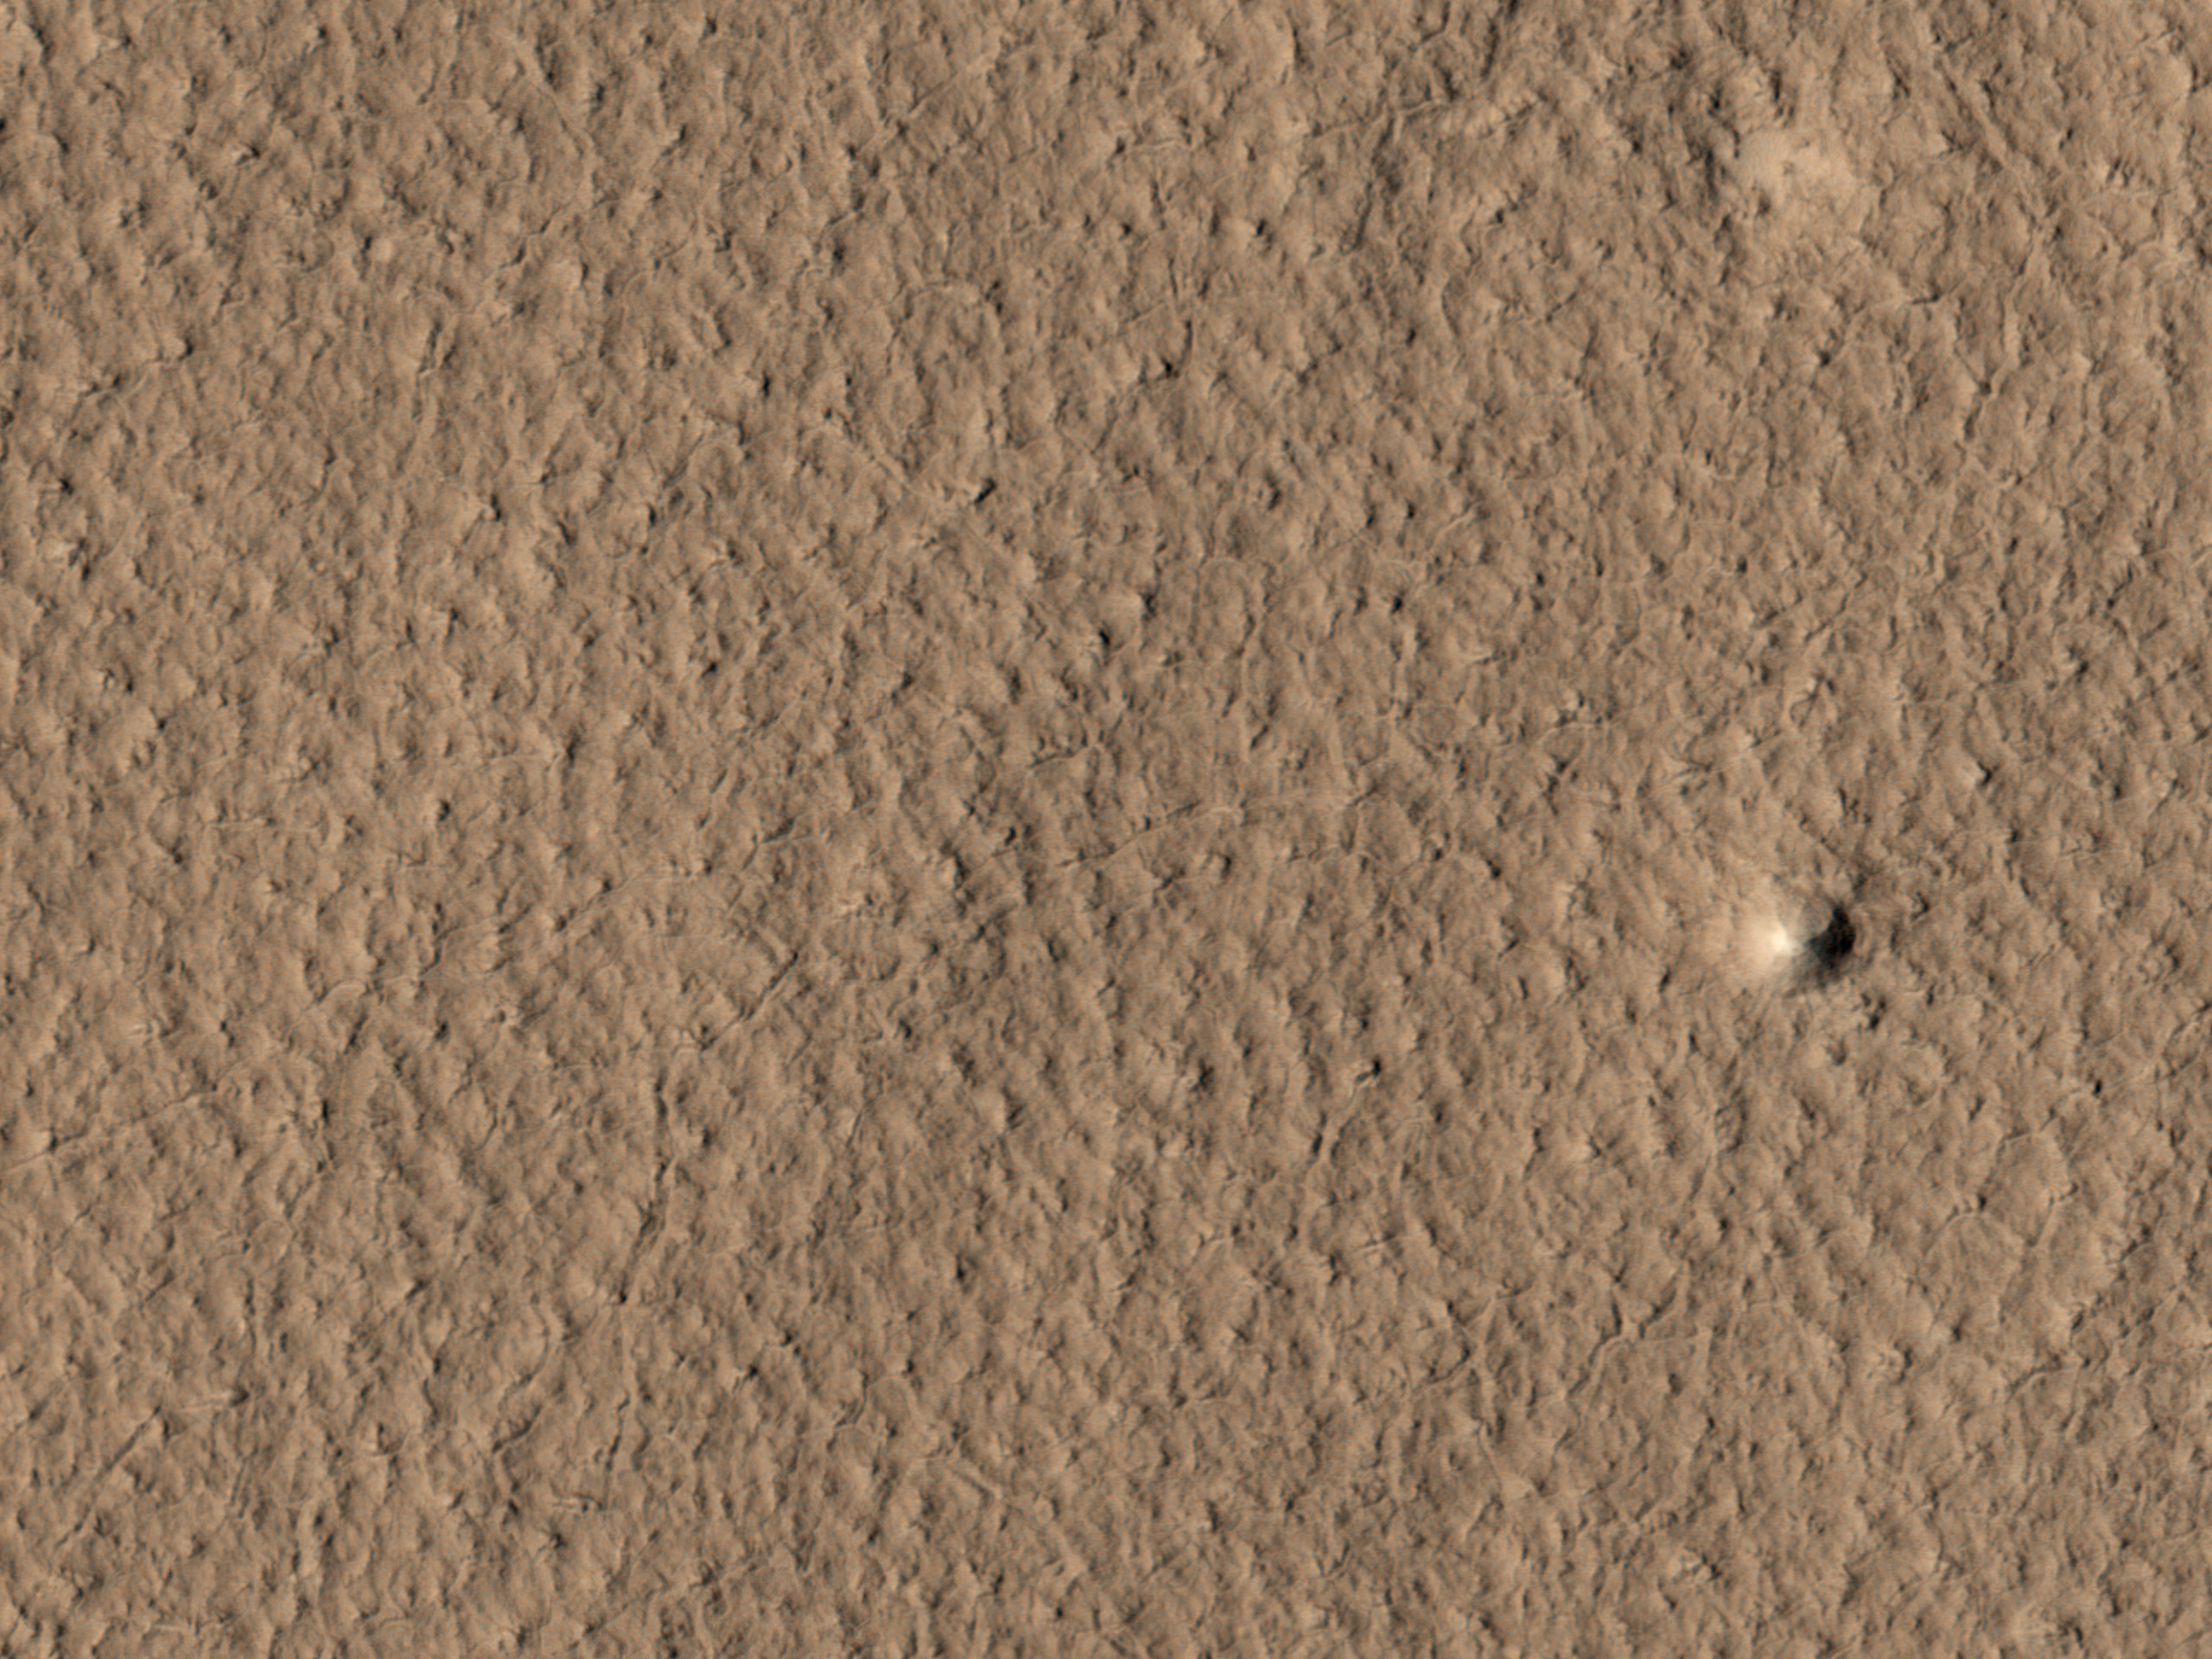 Llinellau Llif a Ffiniau Rhewlif Posib yn Arcadia Planitia